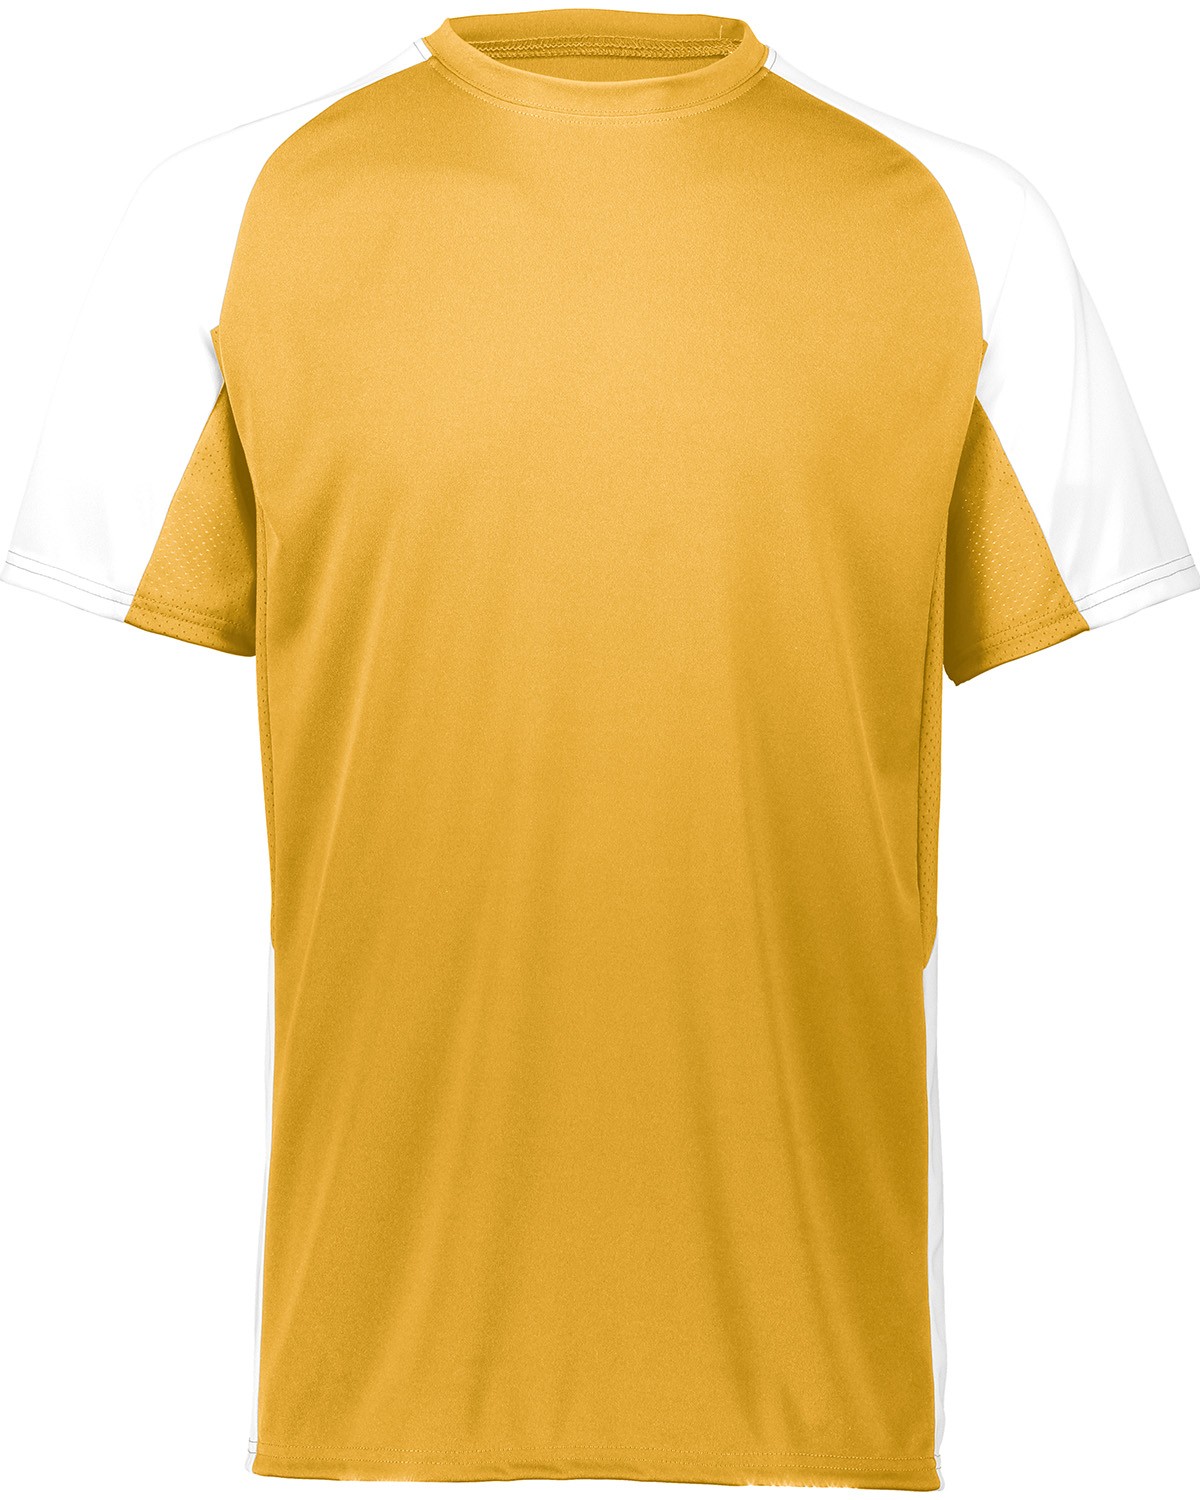 Augusta Sportswear 1517 Men's Cutter Jersey T-Shirt